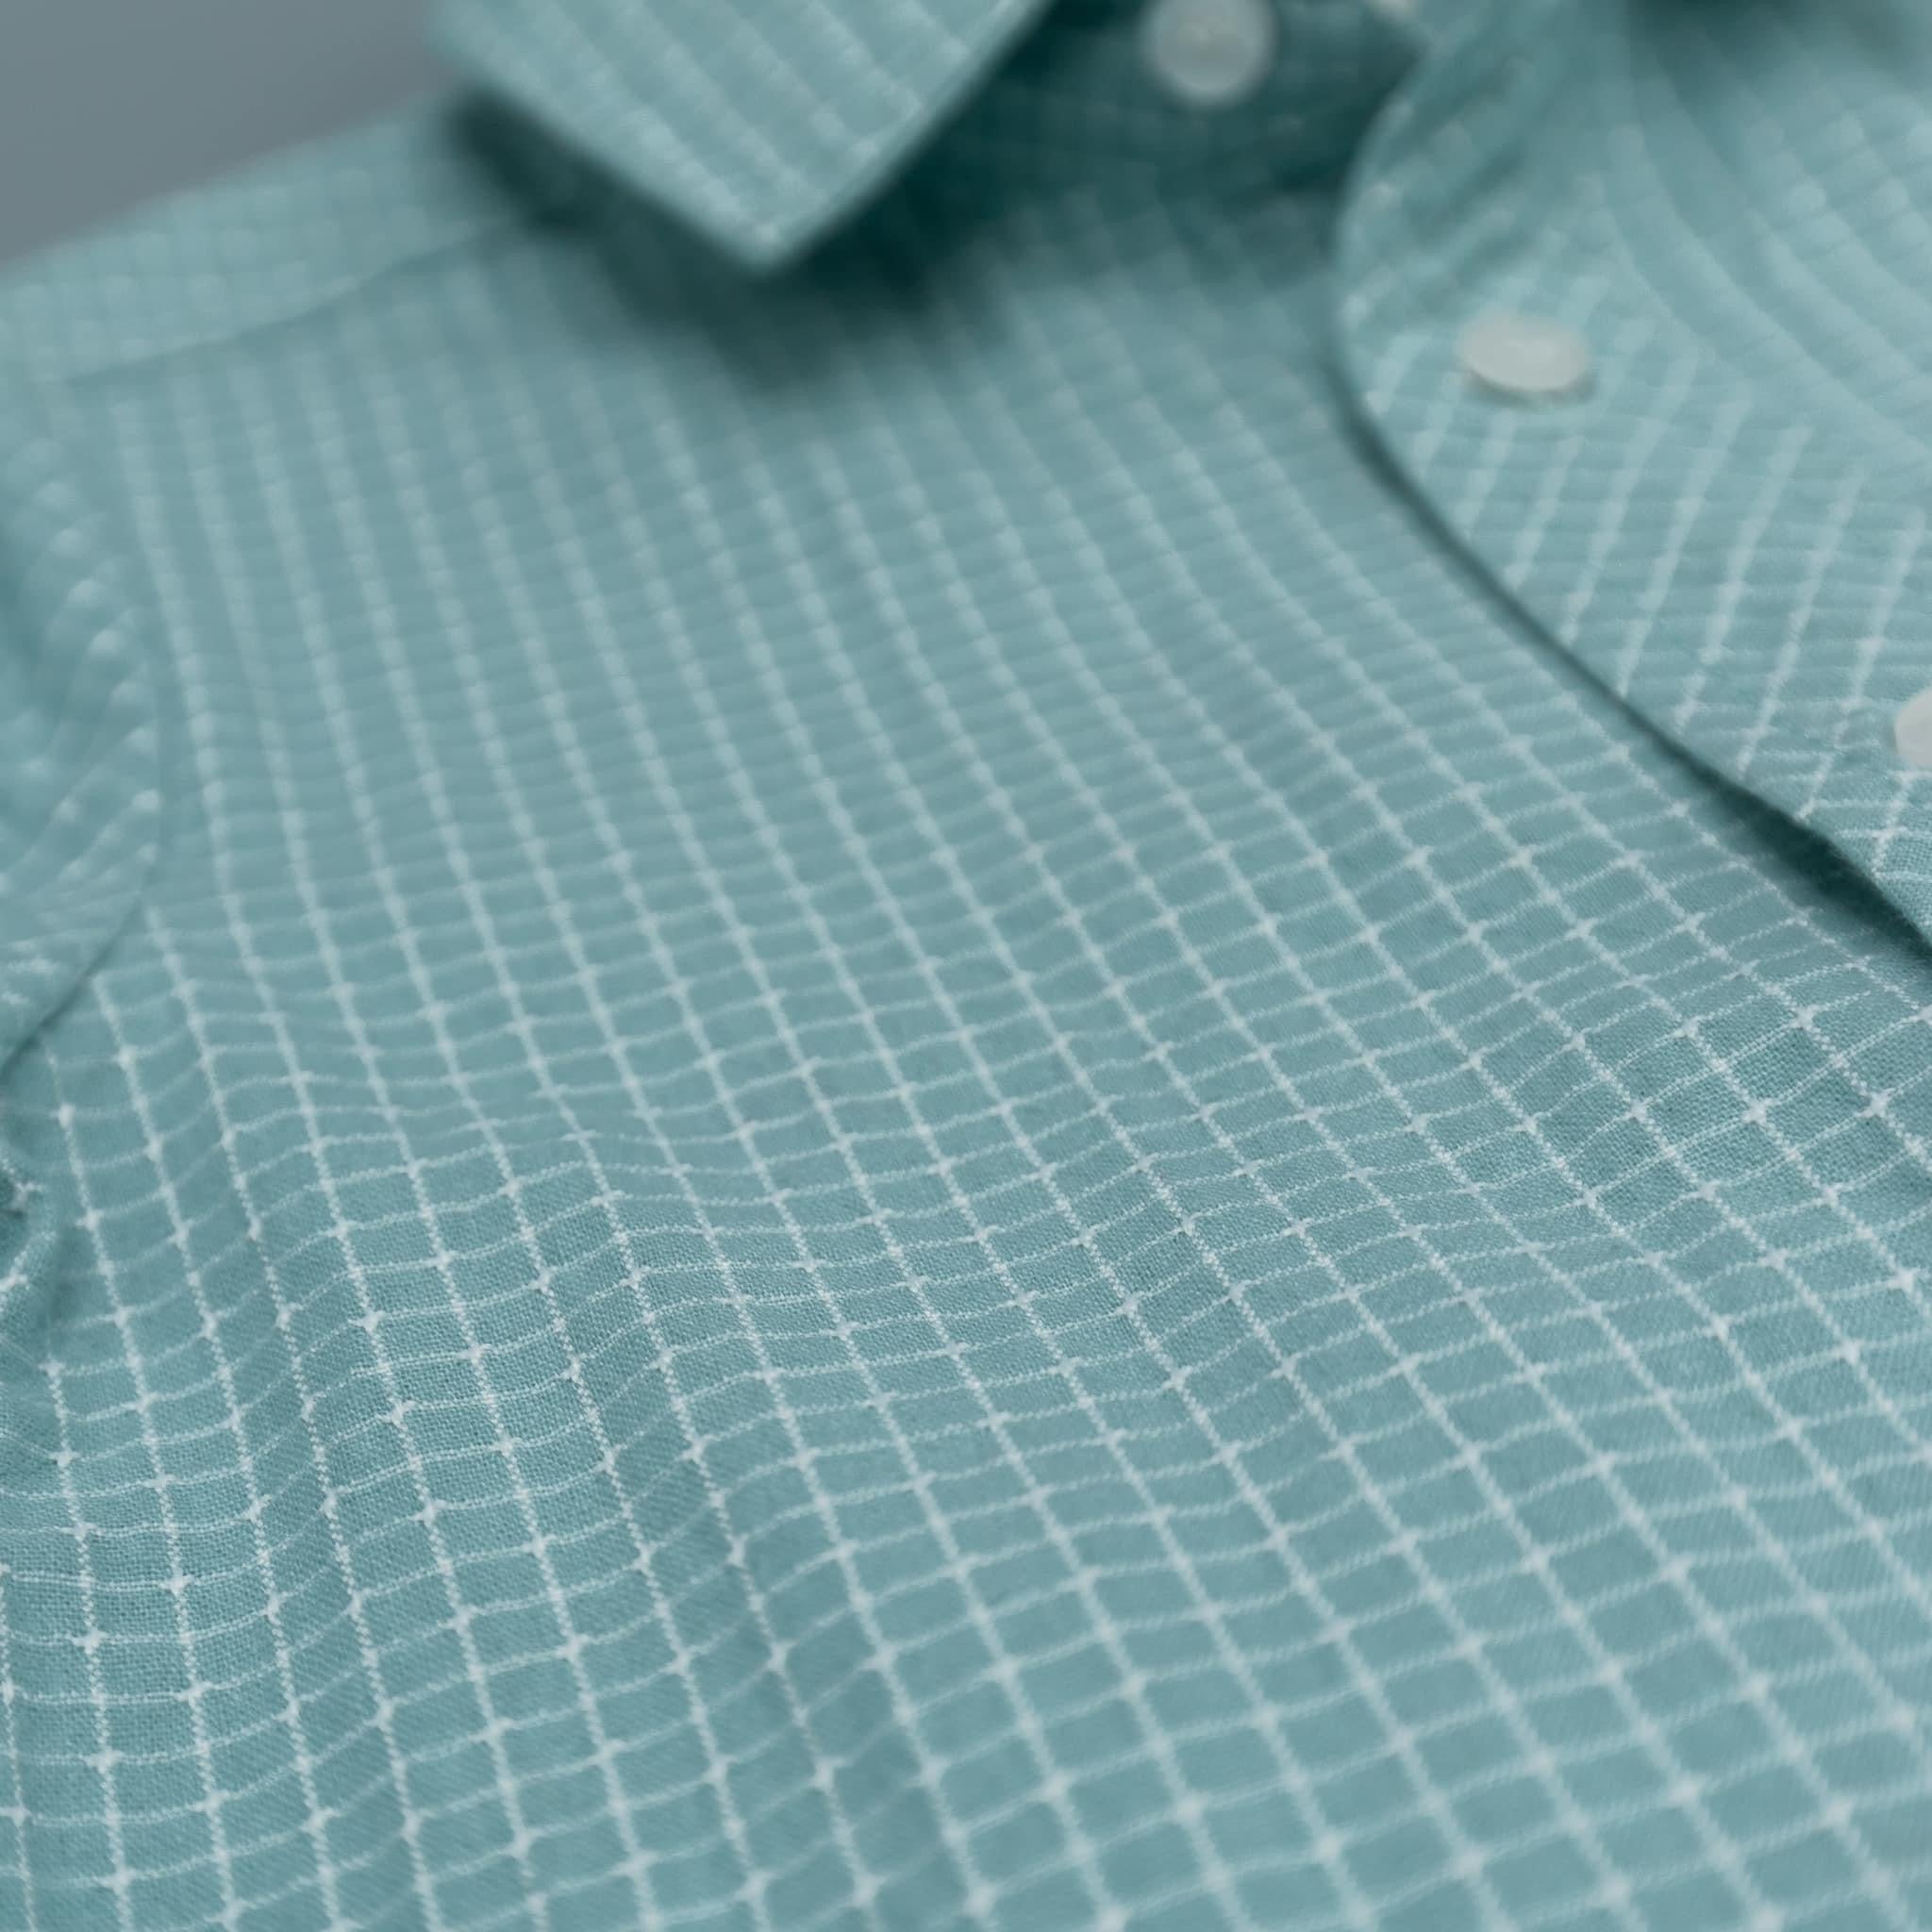 Farmhouse Teal Checkered Boys Adjustable Sleeve Shirt - Evie's Closet Clothing